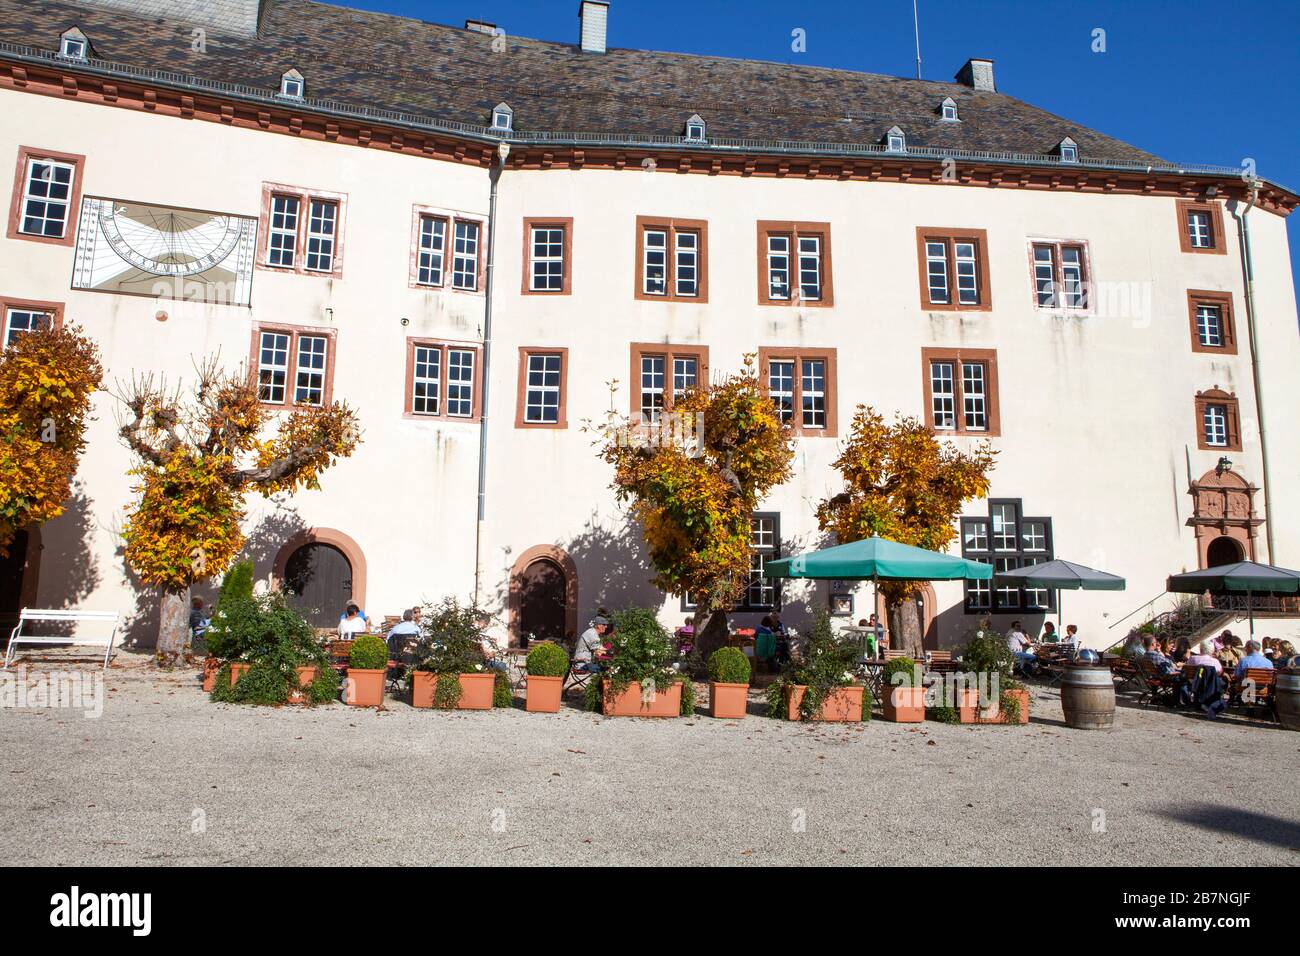 Schloss Berleburg Castle, Bad Berleburg, Wittgensteiner Land district, North Rhine-Westphalia, Germany, Europe Stock Photo